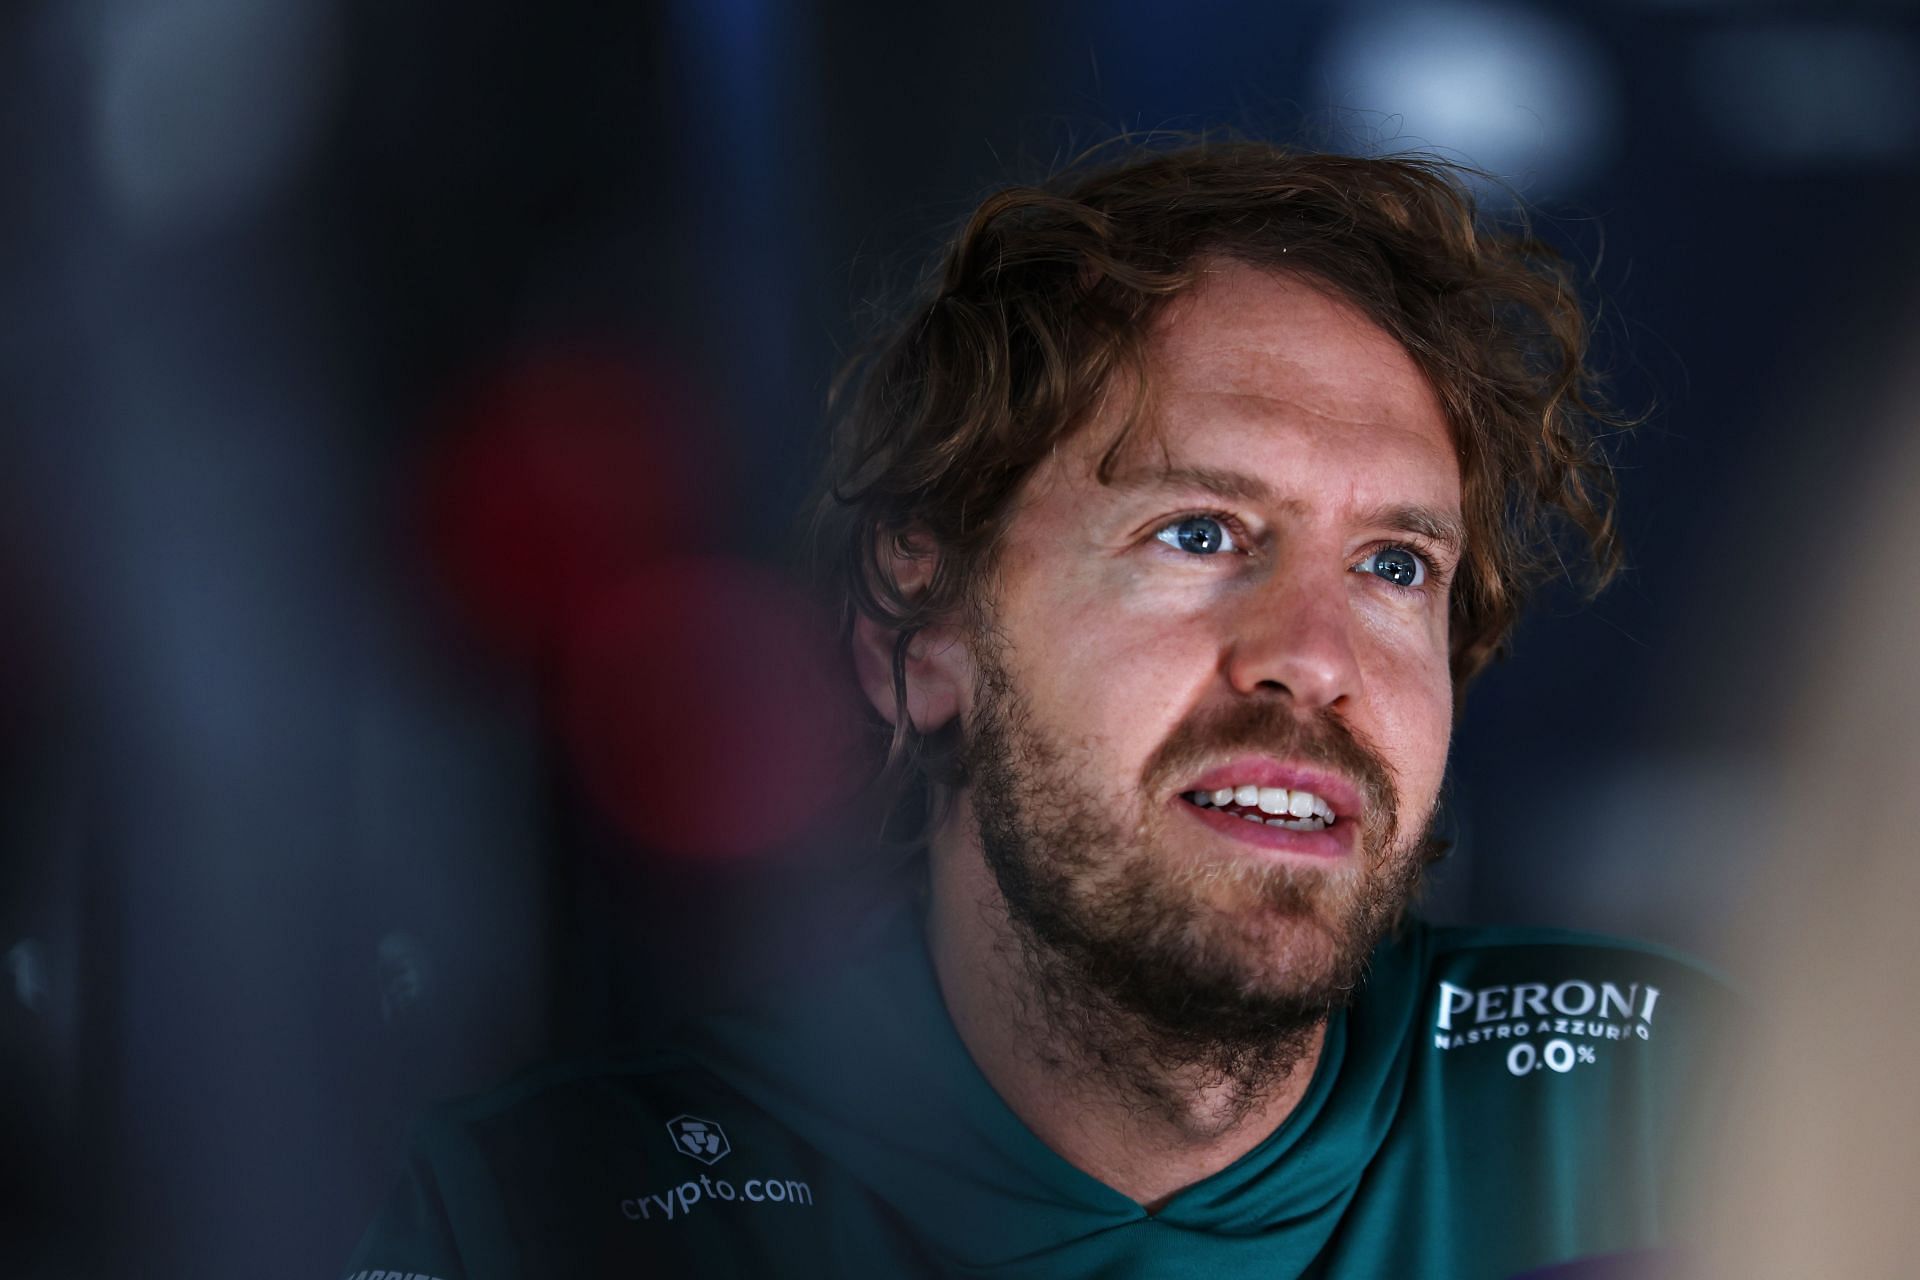 F1 Grand Prix of Austria - Previews - Sebastian Vettel arrives in Spielberg